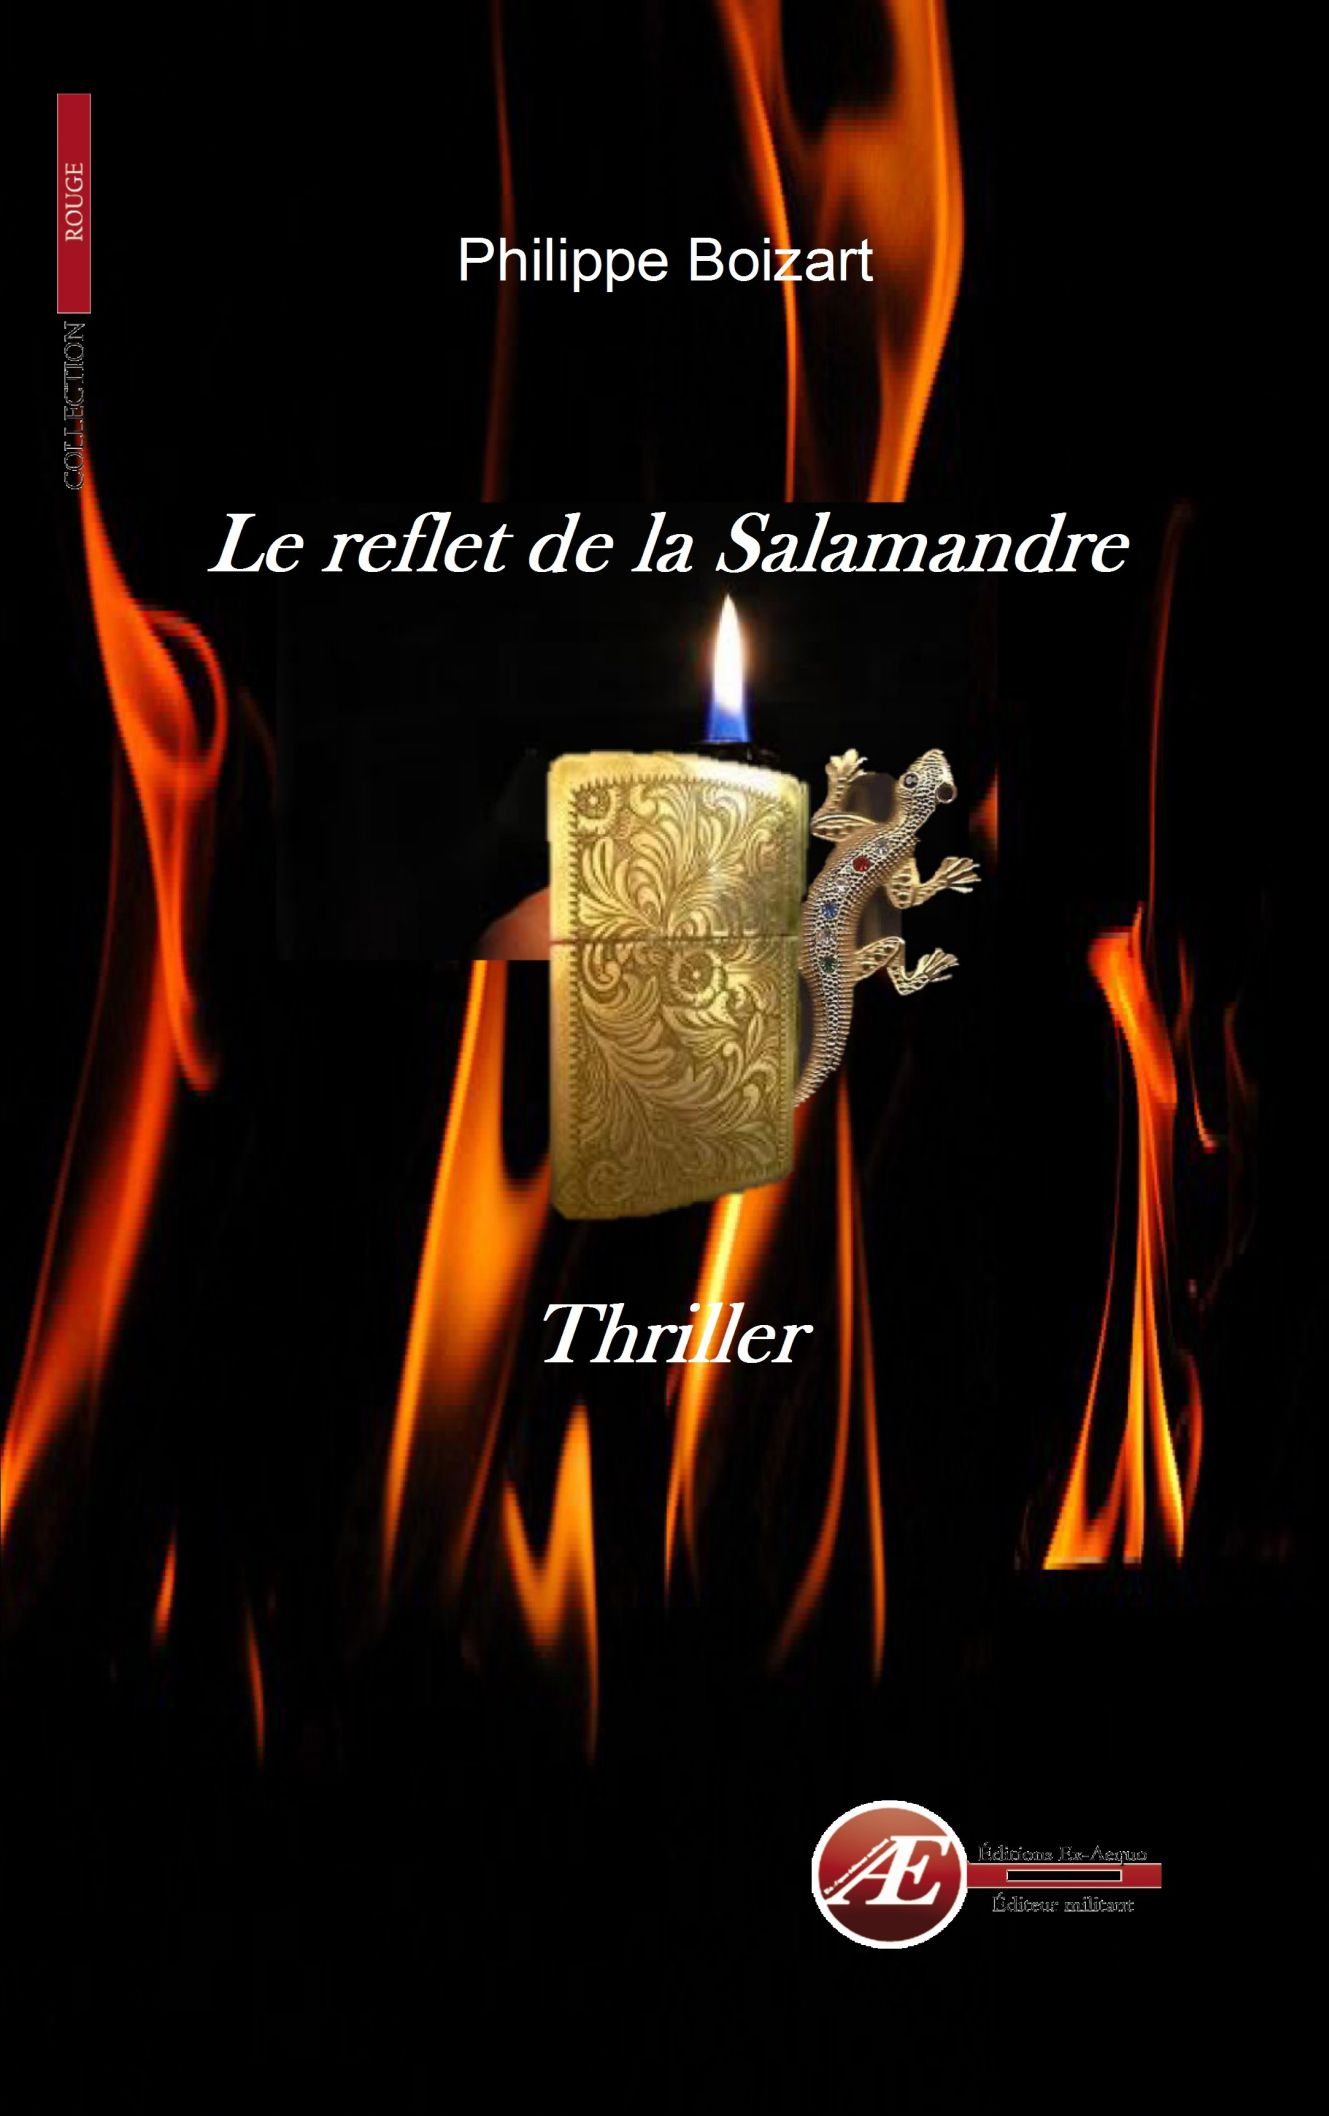 You are currently viewing Le reflet de la Salamandre, de Philippe Boizart